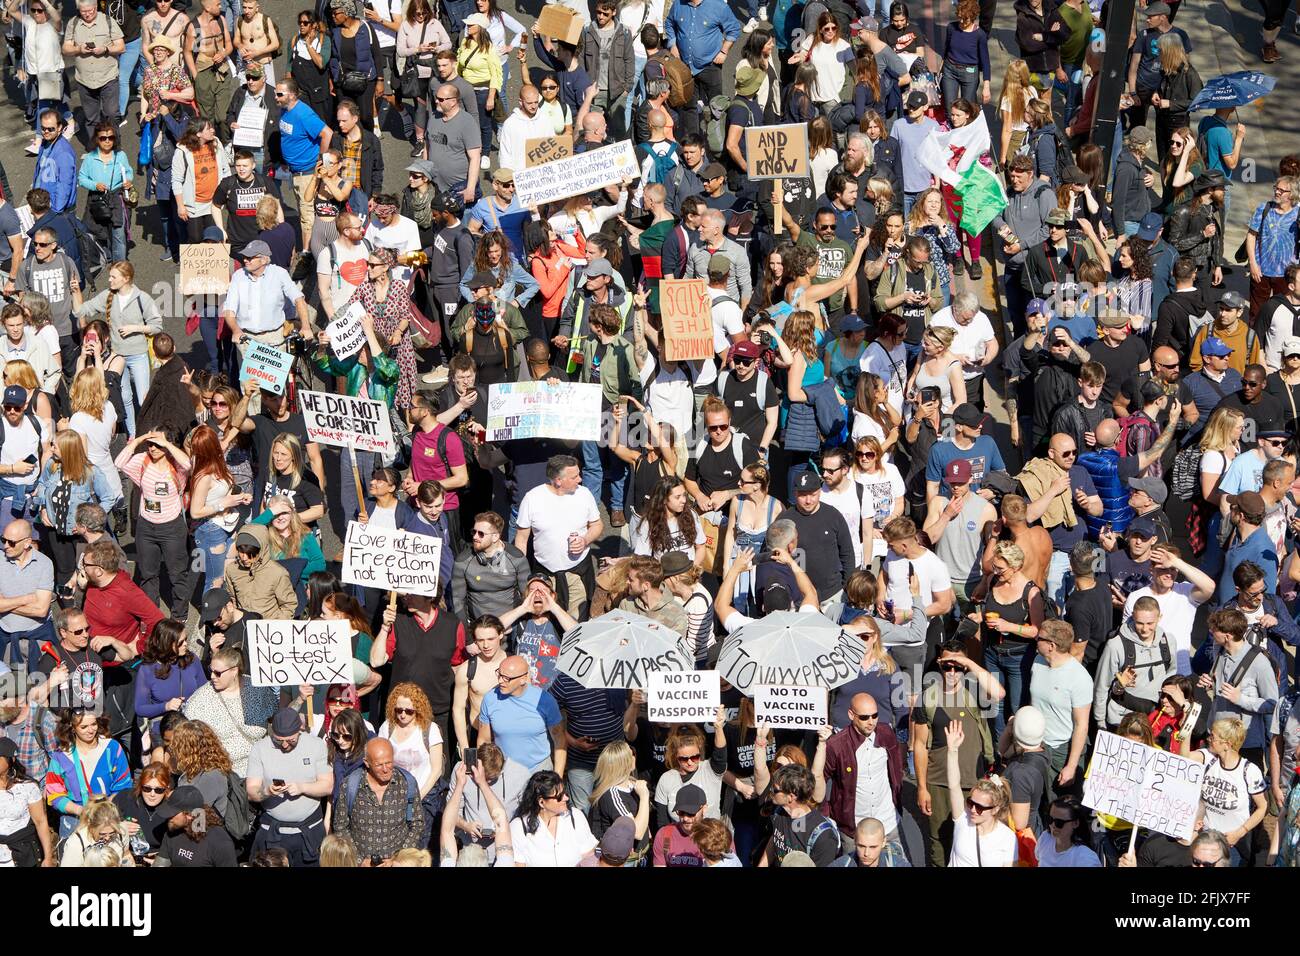 Londres, Reino Unido - 24 Abr 2021: Miles de personas marcharon en el centro de Londres pidiendo el levantamiento de todas las restricciones al coronavirus. Foto de stock